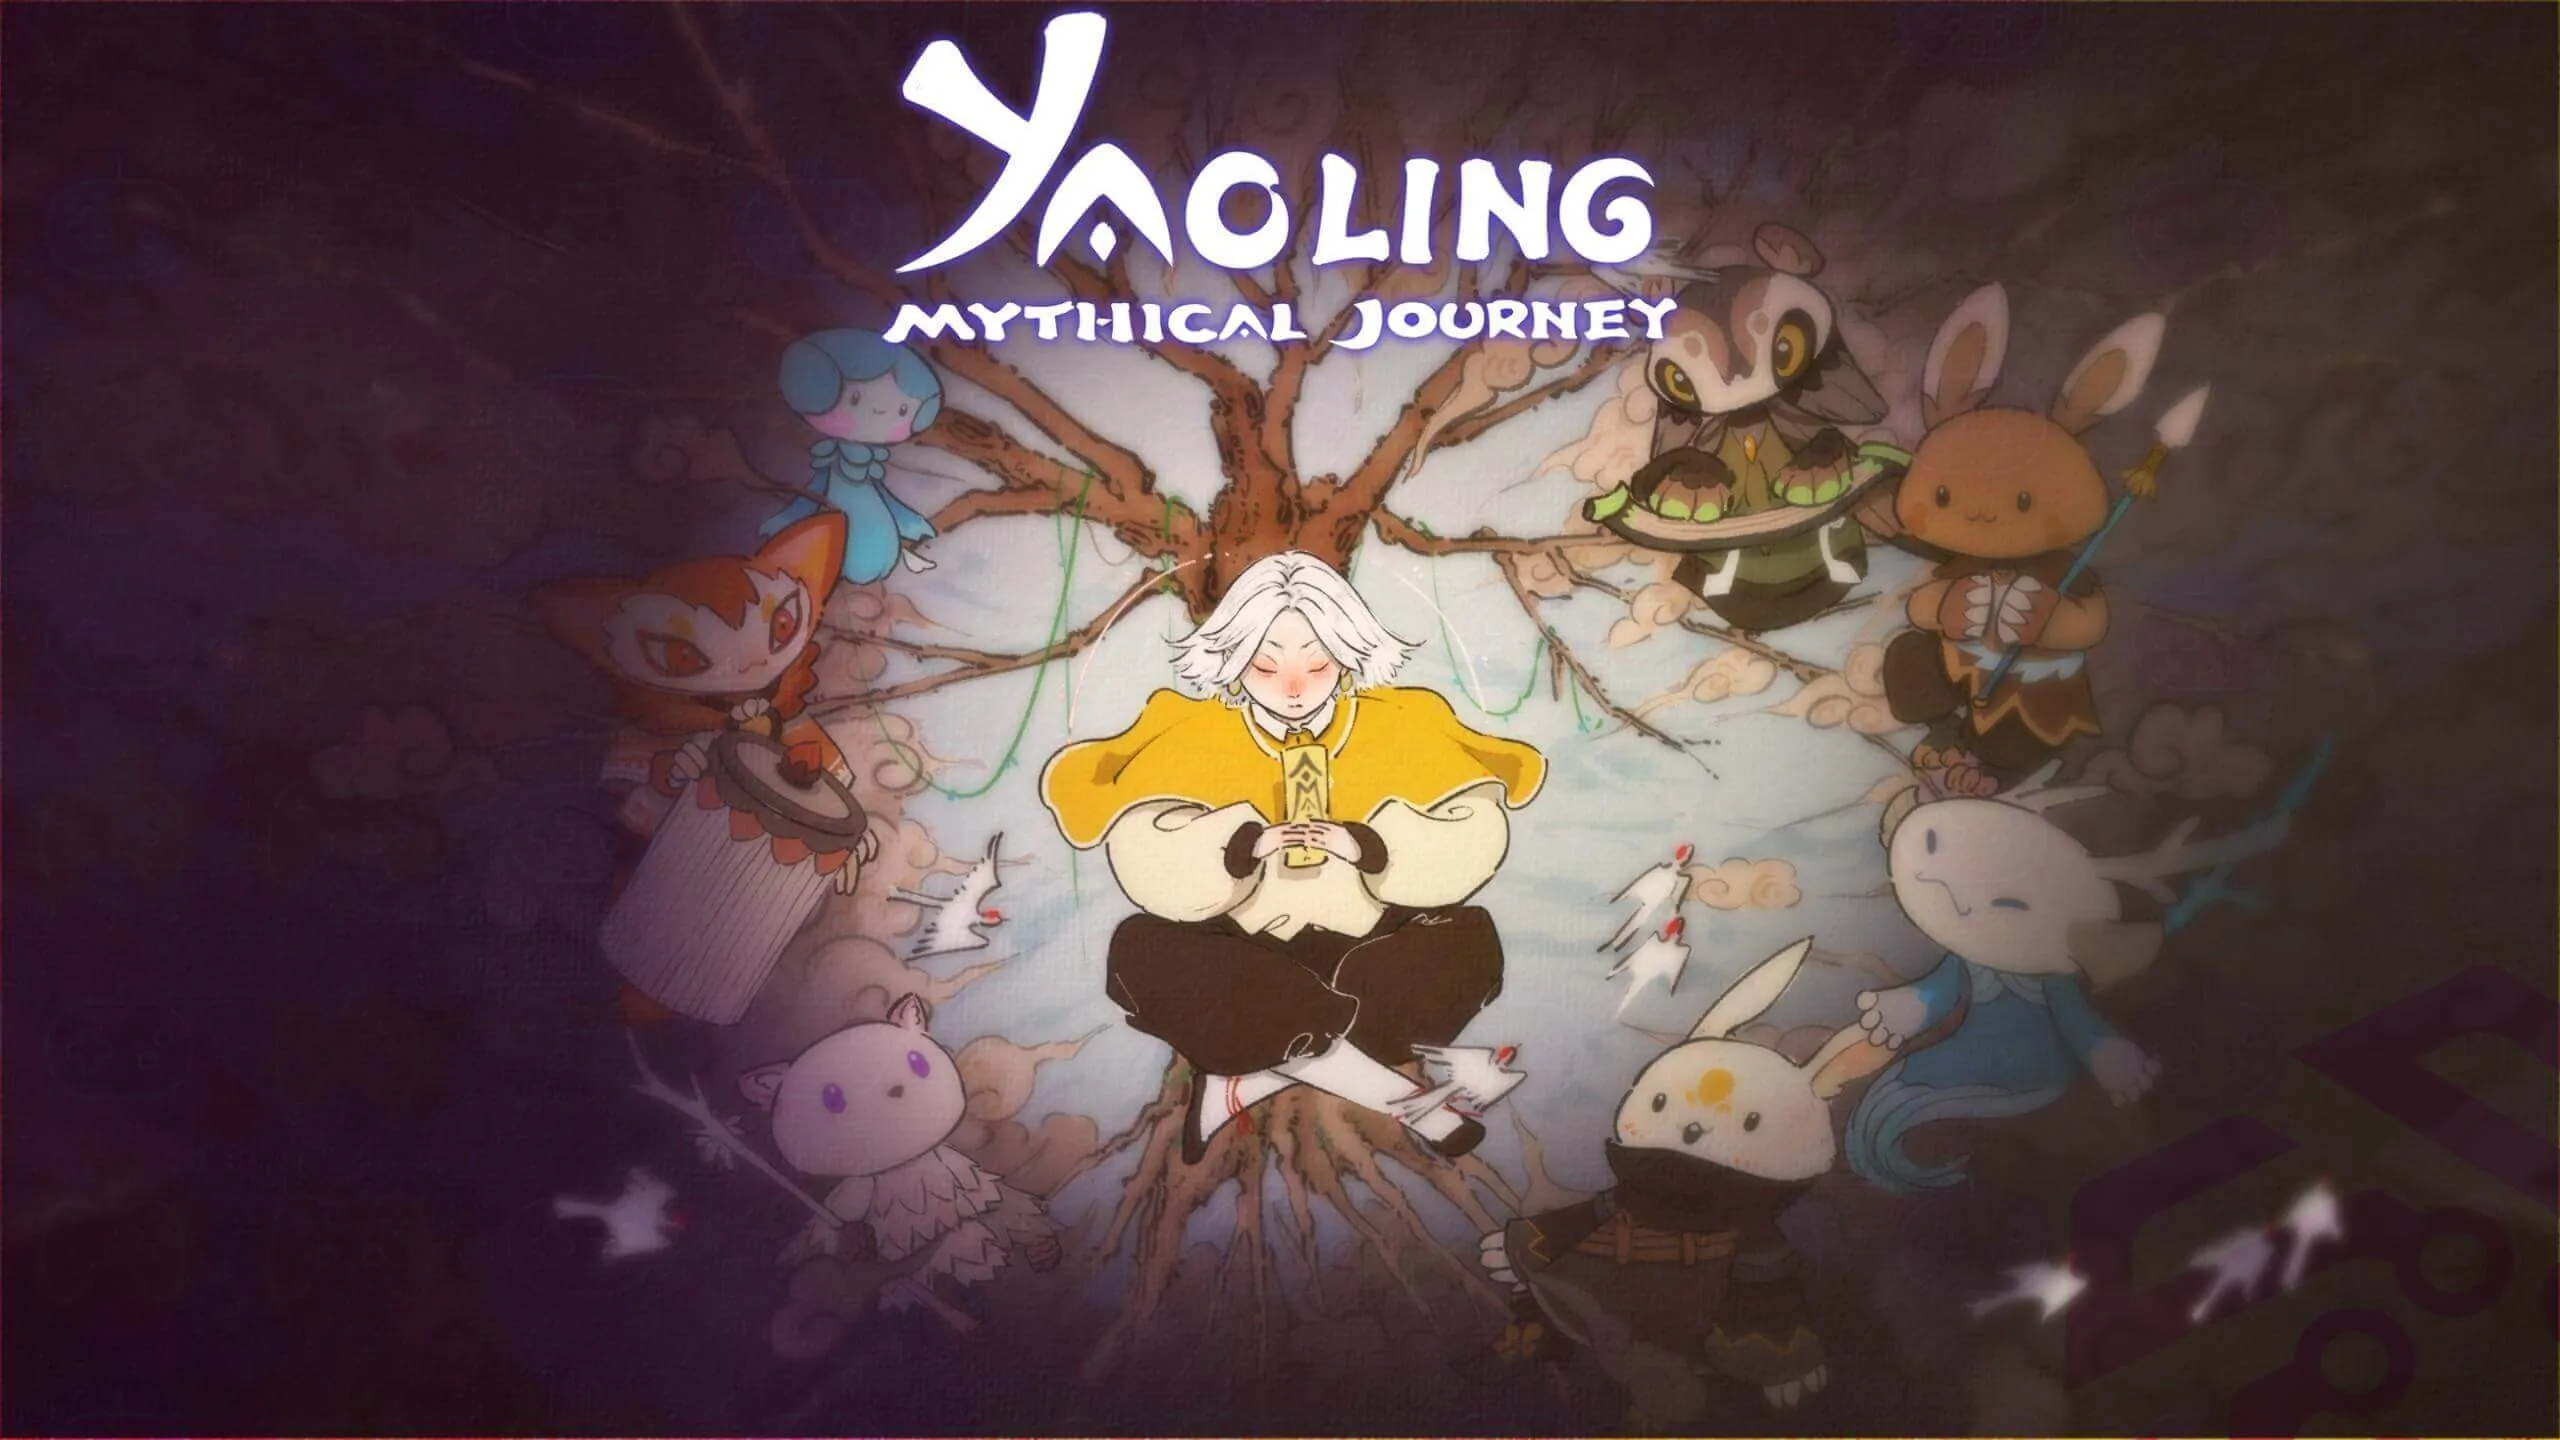 Yaoling: mythical journey keyart for teaser